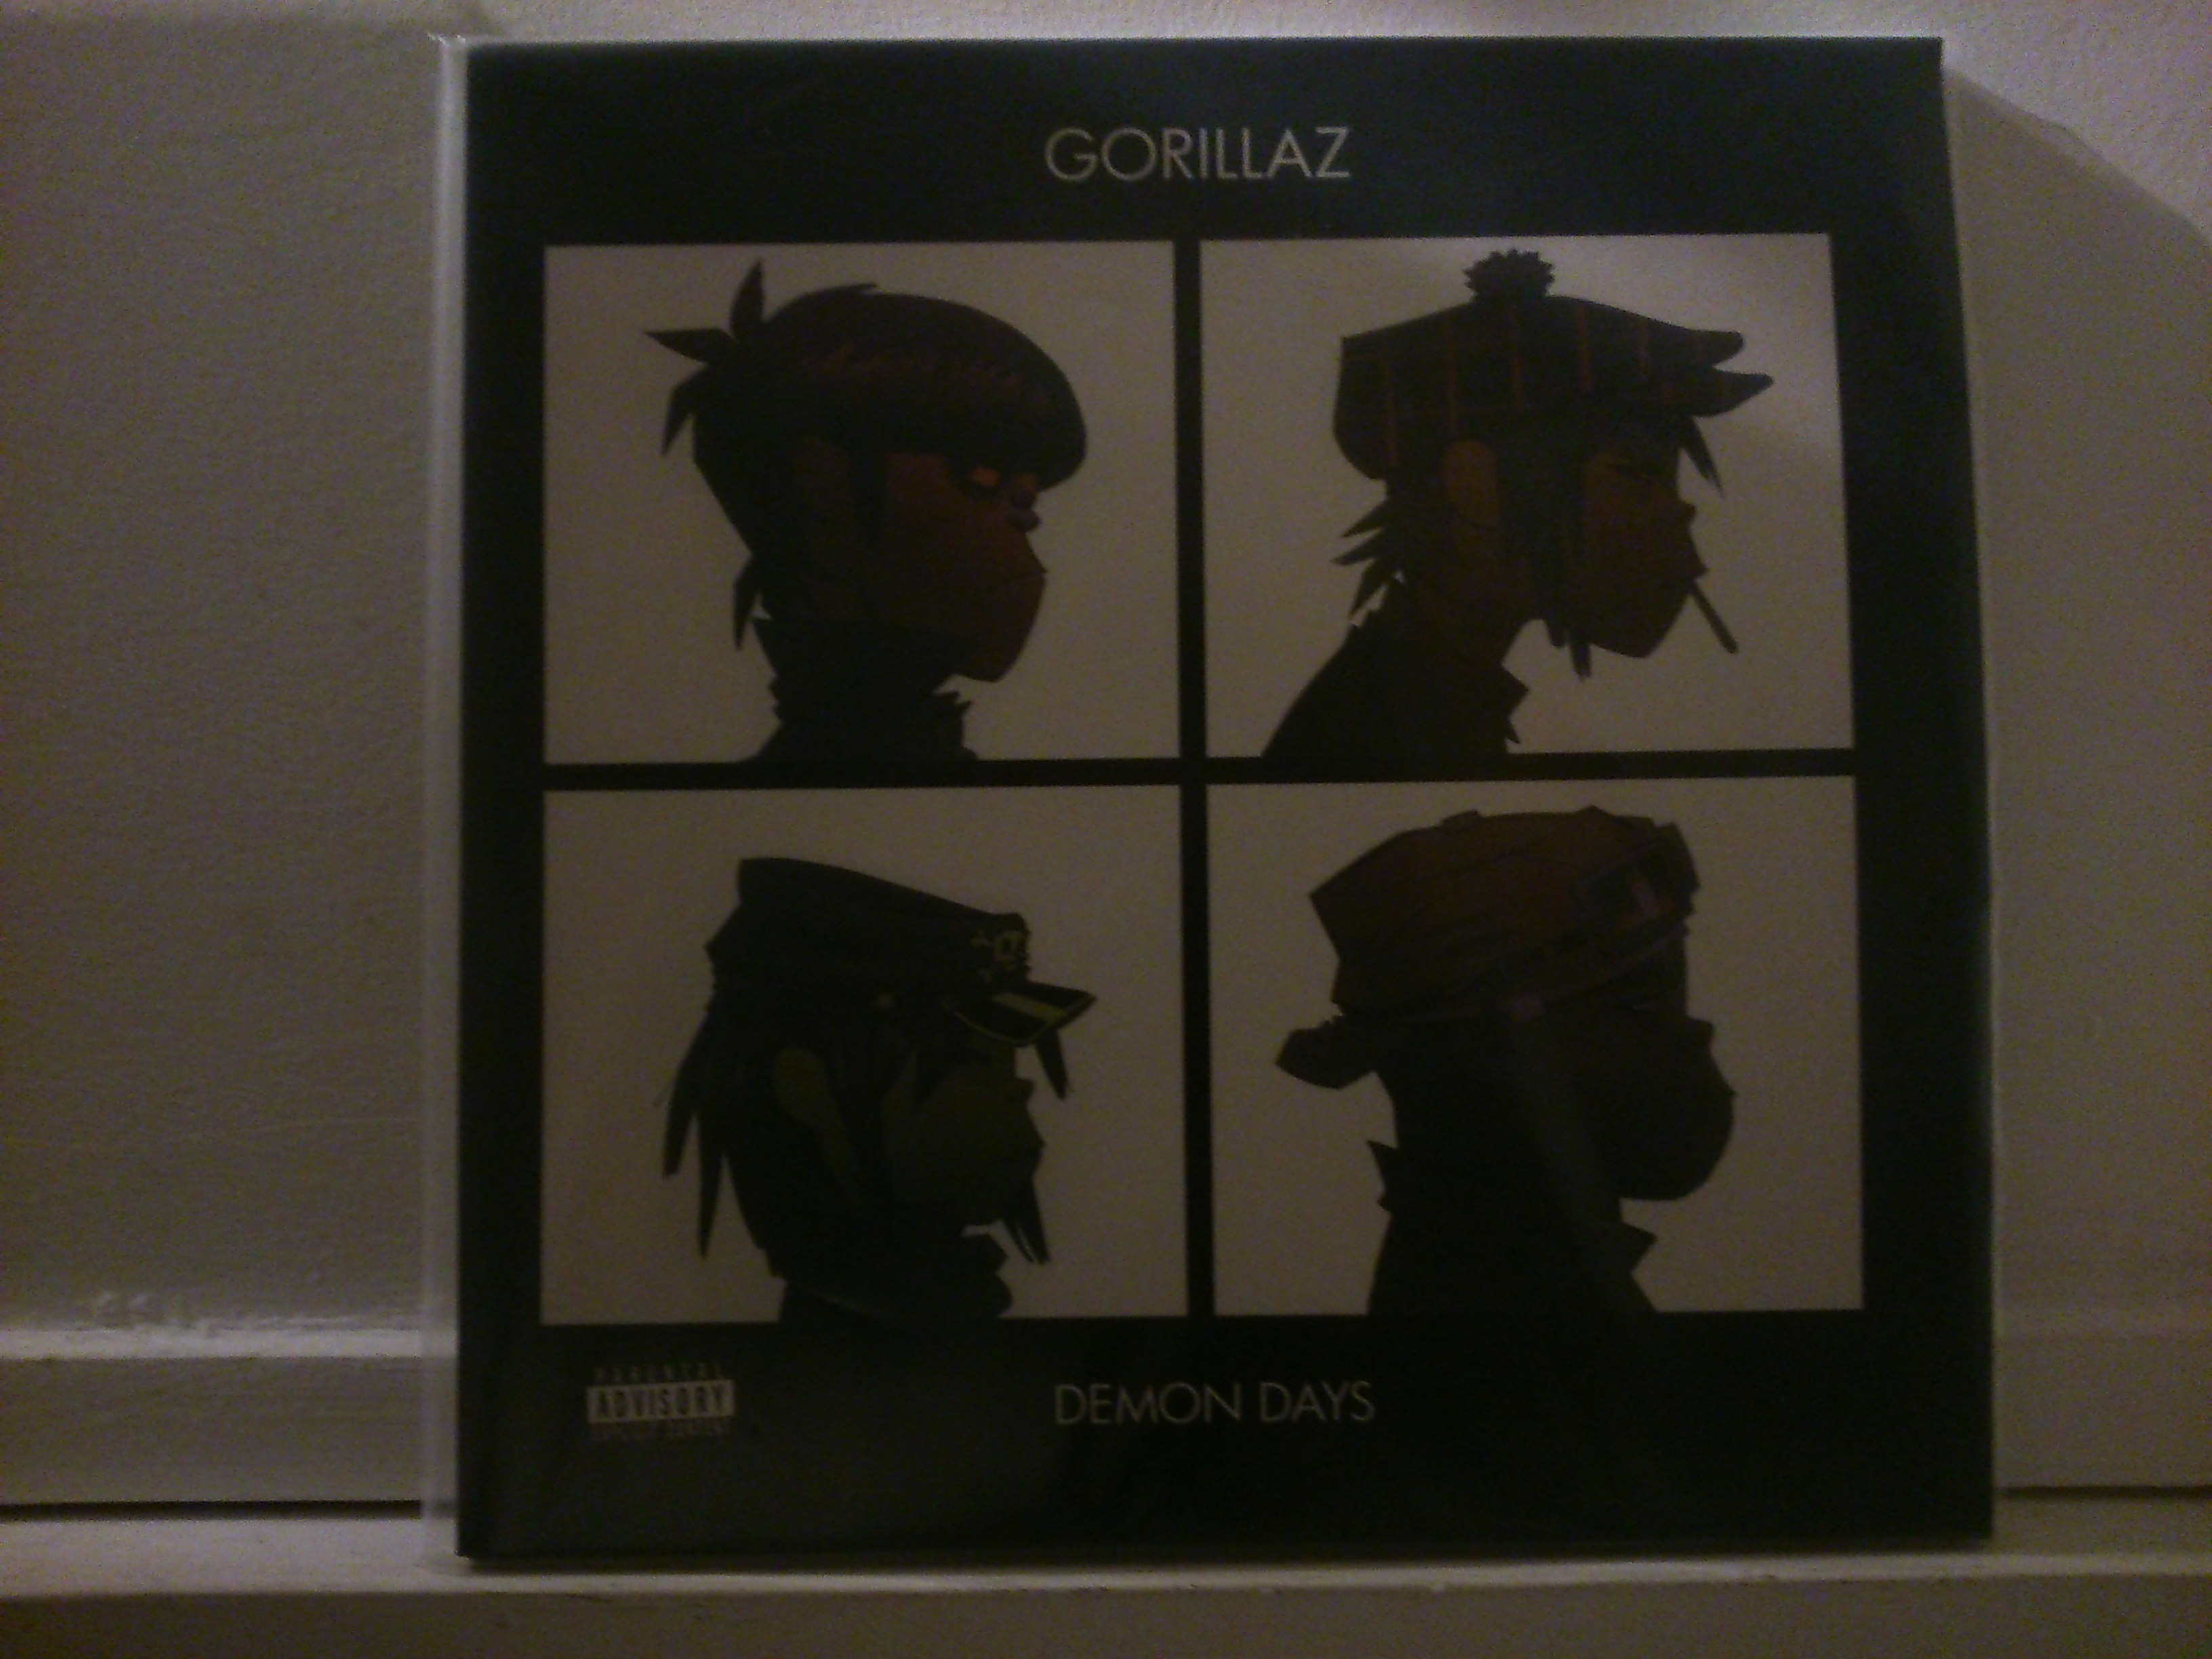 Acheter disque vinyle gorillaz Demon days a vendre